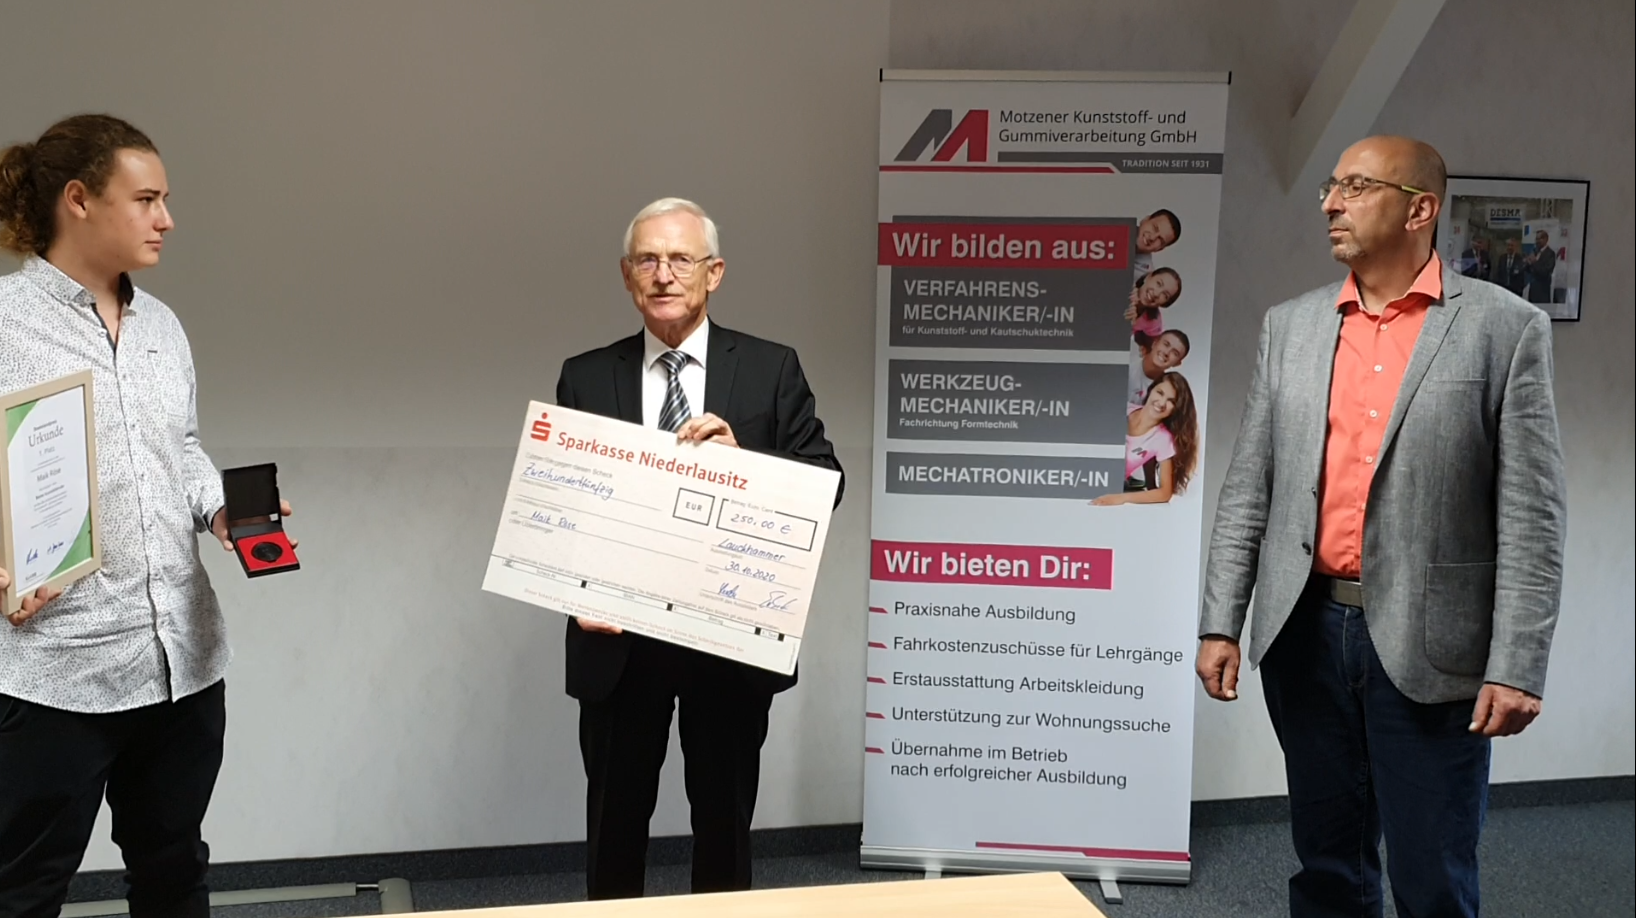 Baekeland Preis 2020: v.l.n.r. Matthias Purann (Preisträger), Dr. Hubert Lerche (KuVBB e.V.) und Maik Röse (Motzener Kunststoff- und Gummiverarbeitung GmbH)